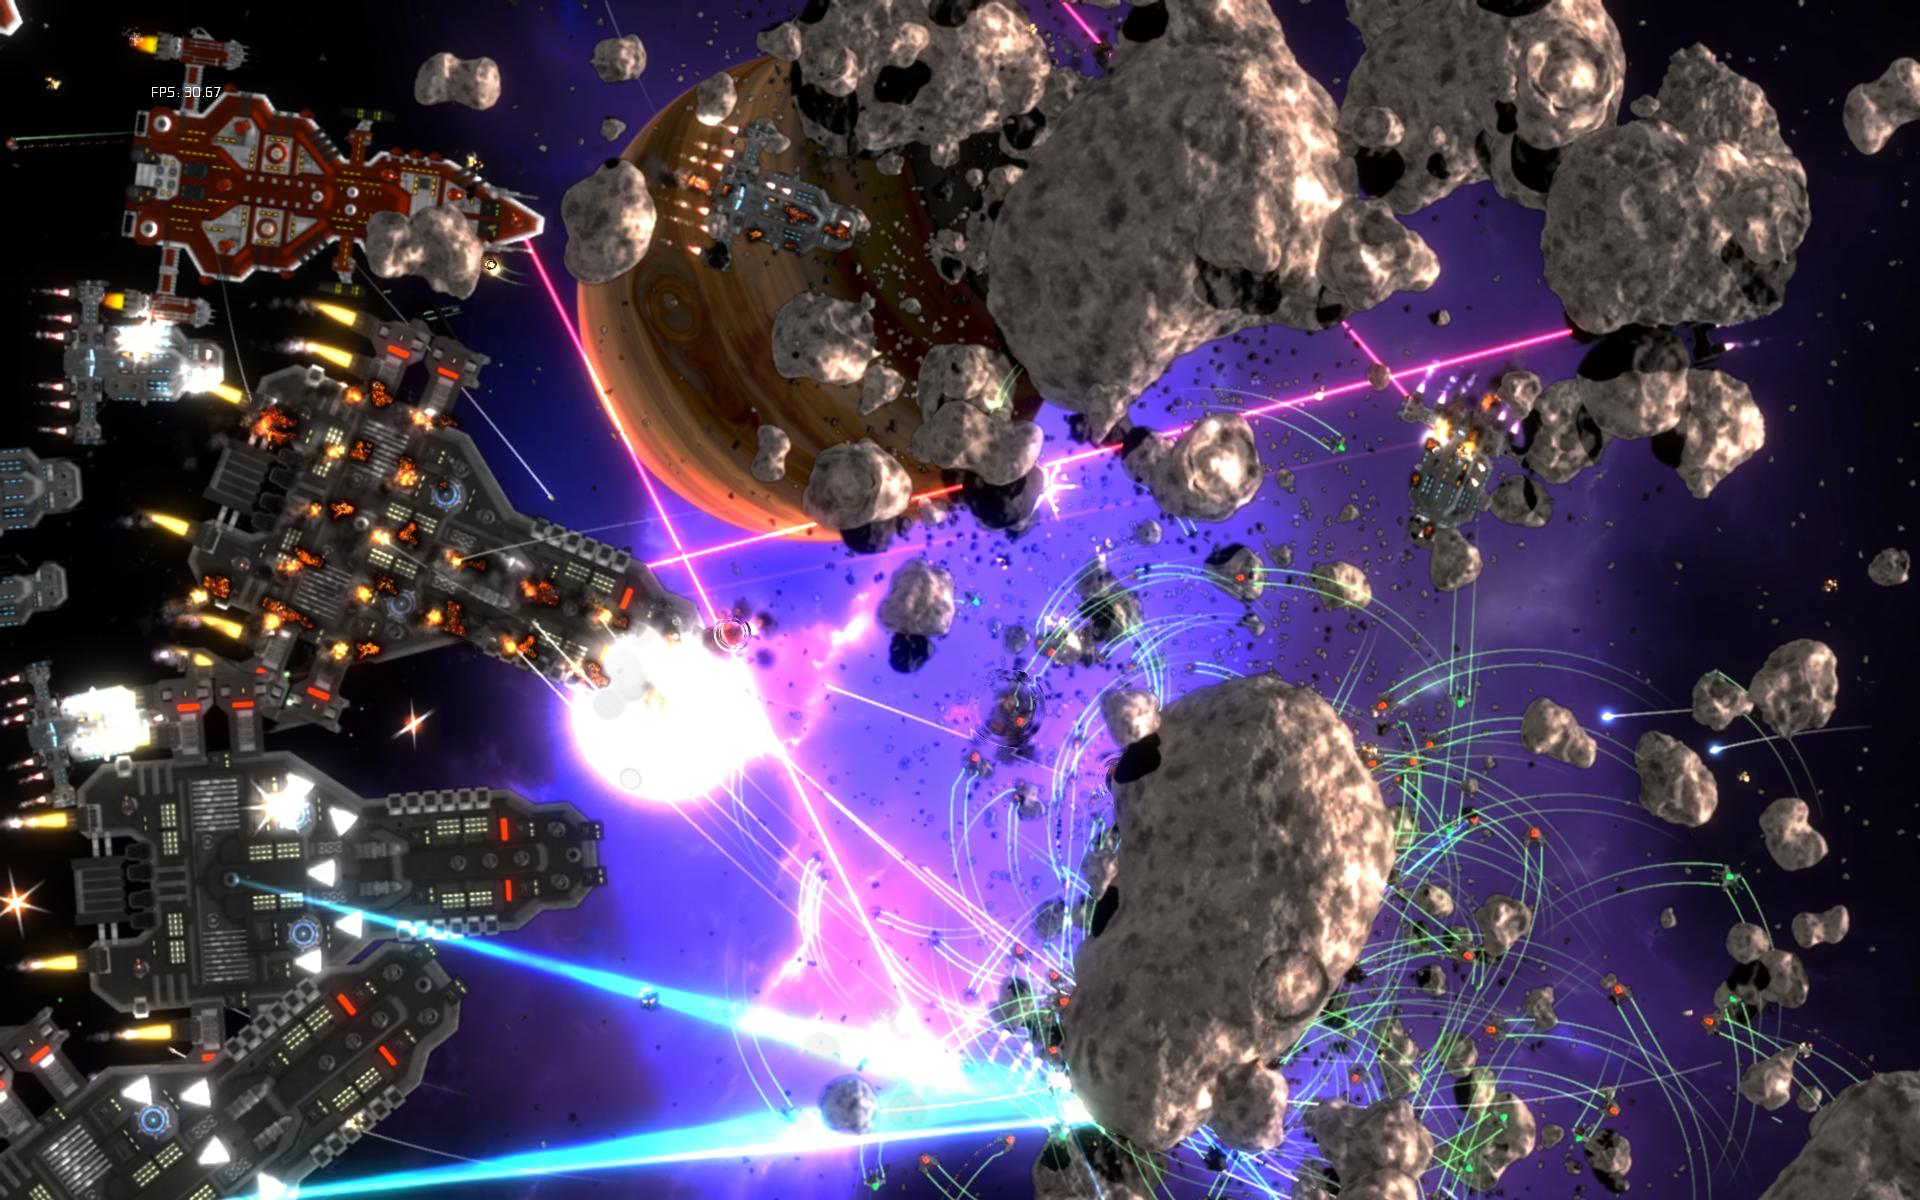 Gratuitous Space Battles 2 at EGX 2014